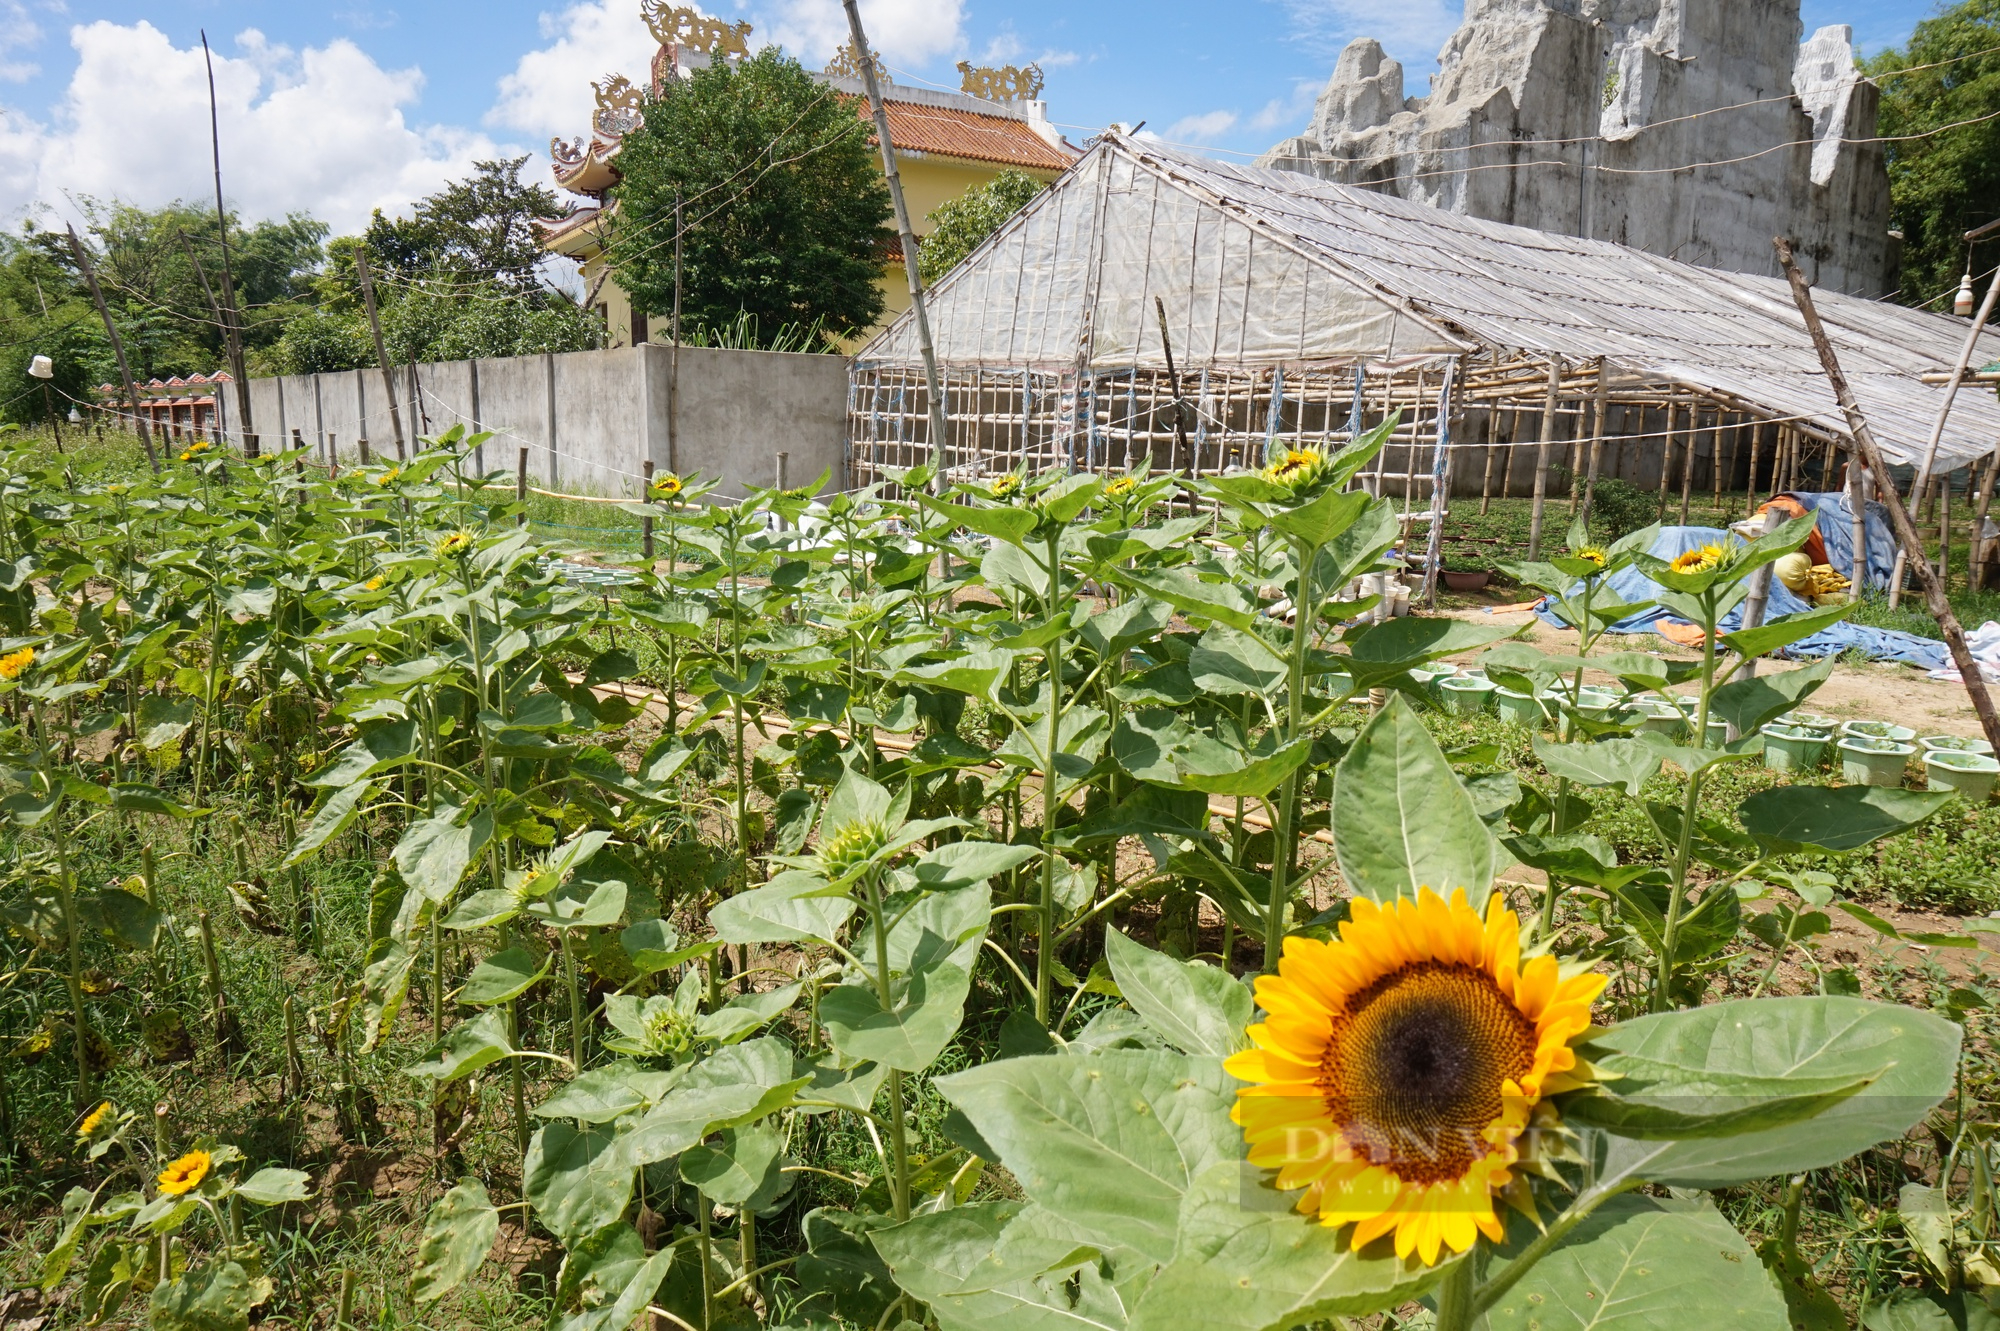 Đam mê trồng hoa, một phụ nữ ở Đà Nẵng thu lãi hàng trăm triệu mỗi năm - Ảnh 3.